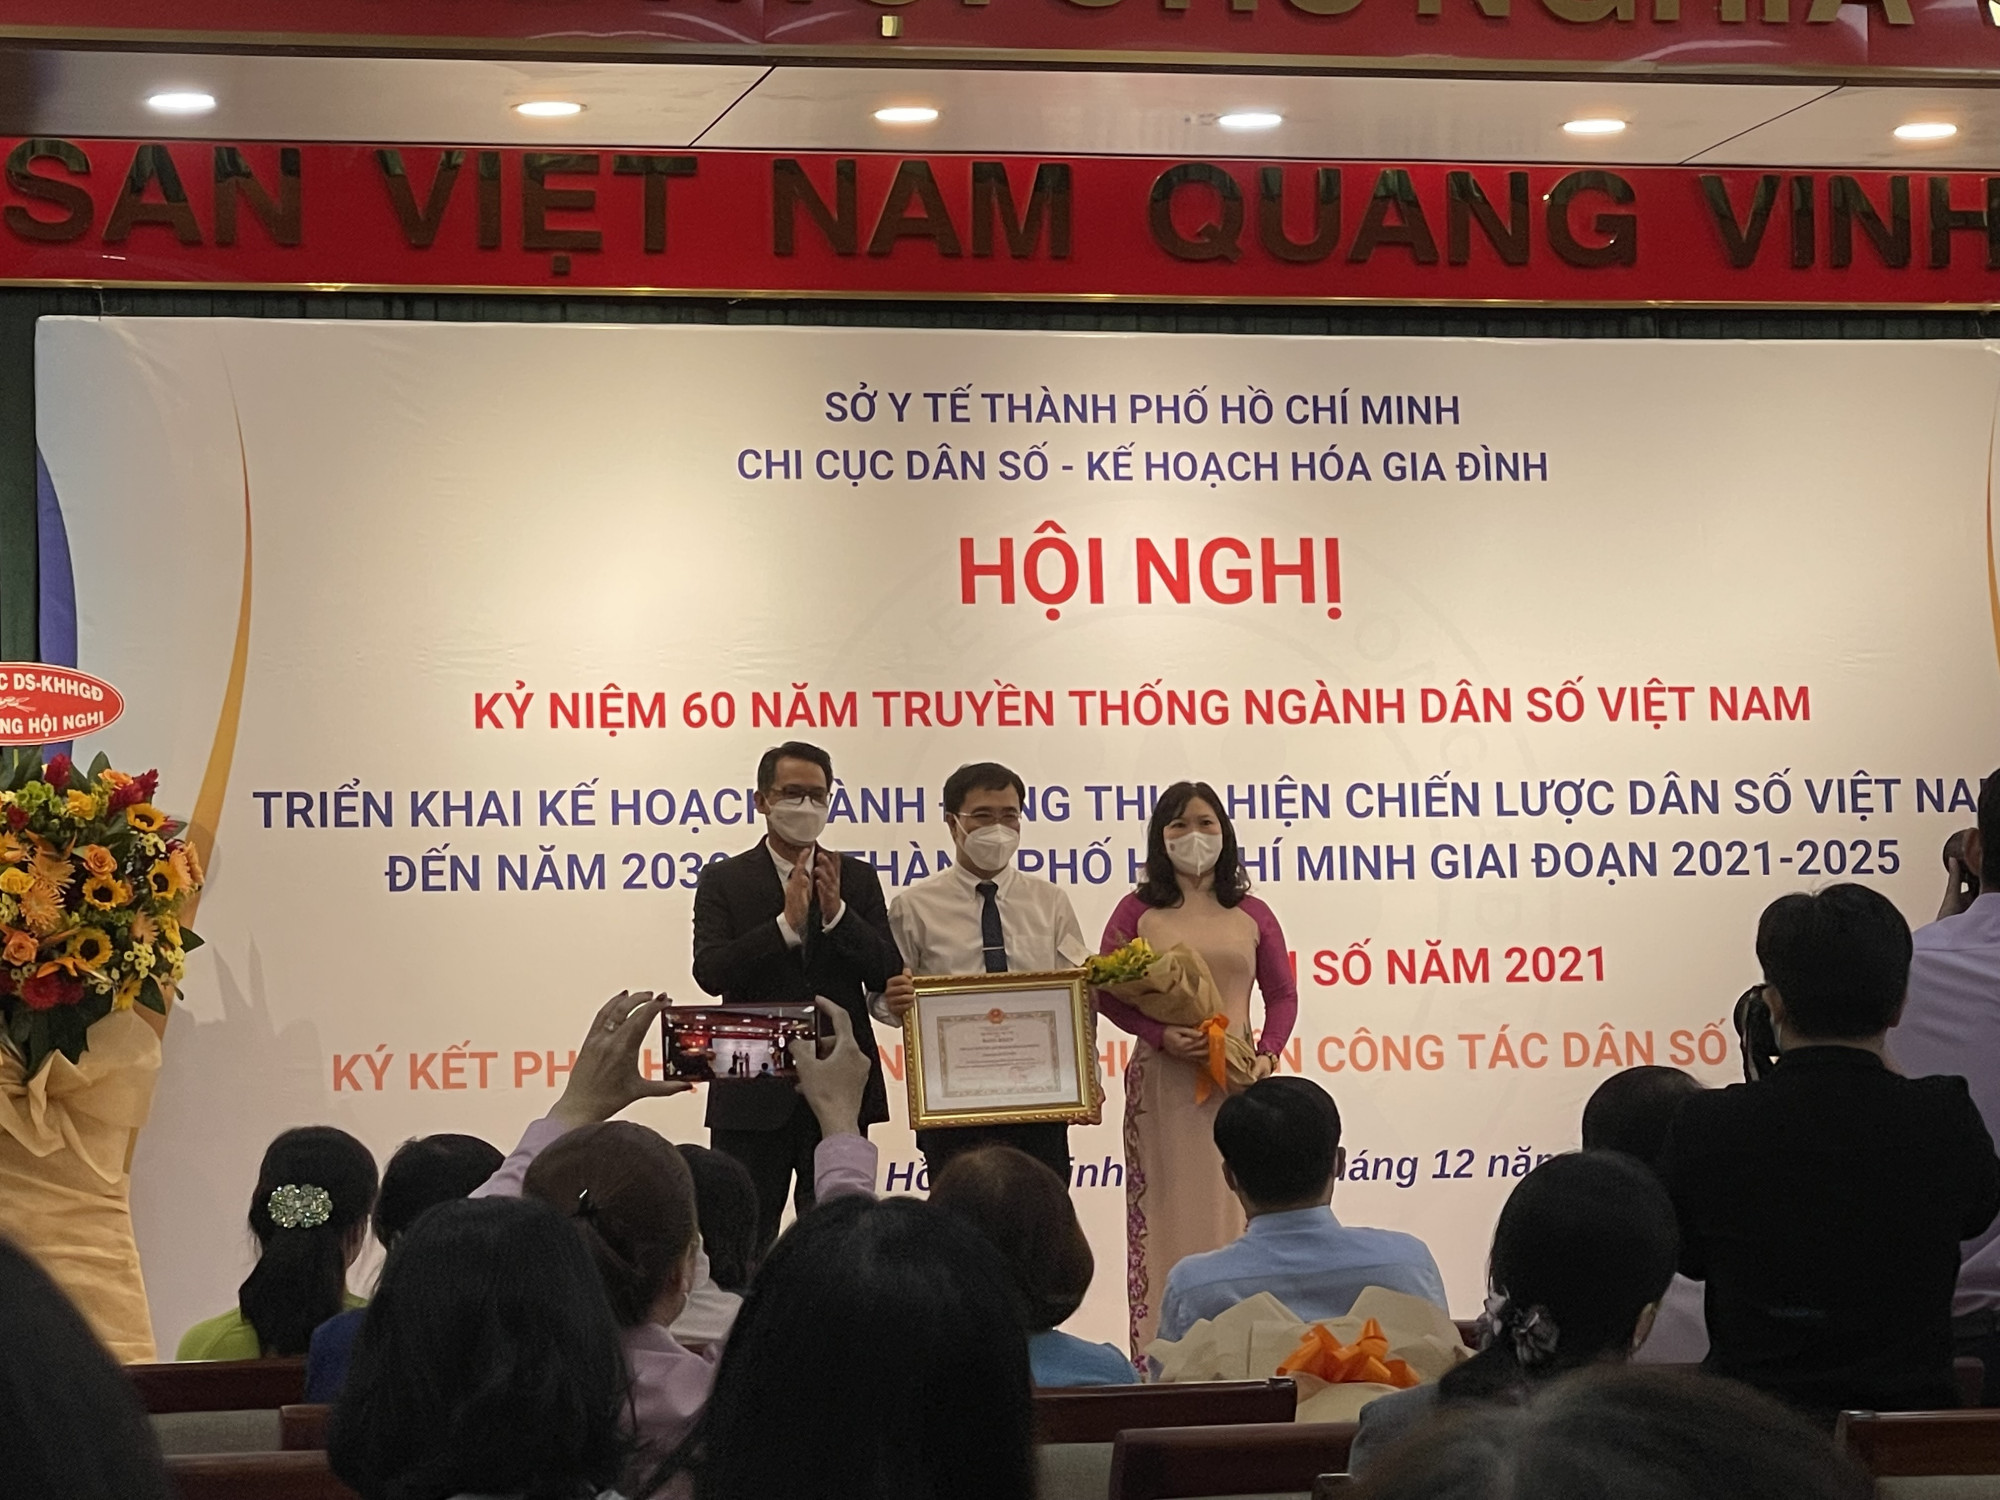 Các cá nhân và đơn vị được khen thưởng vì có thành tích cao trong hoạt động công tác dân số tại TPHCM. Ảnh: Thanh Huyền